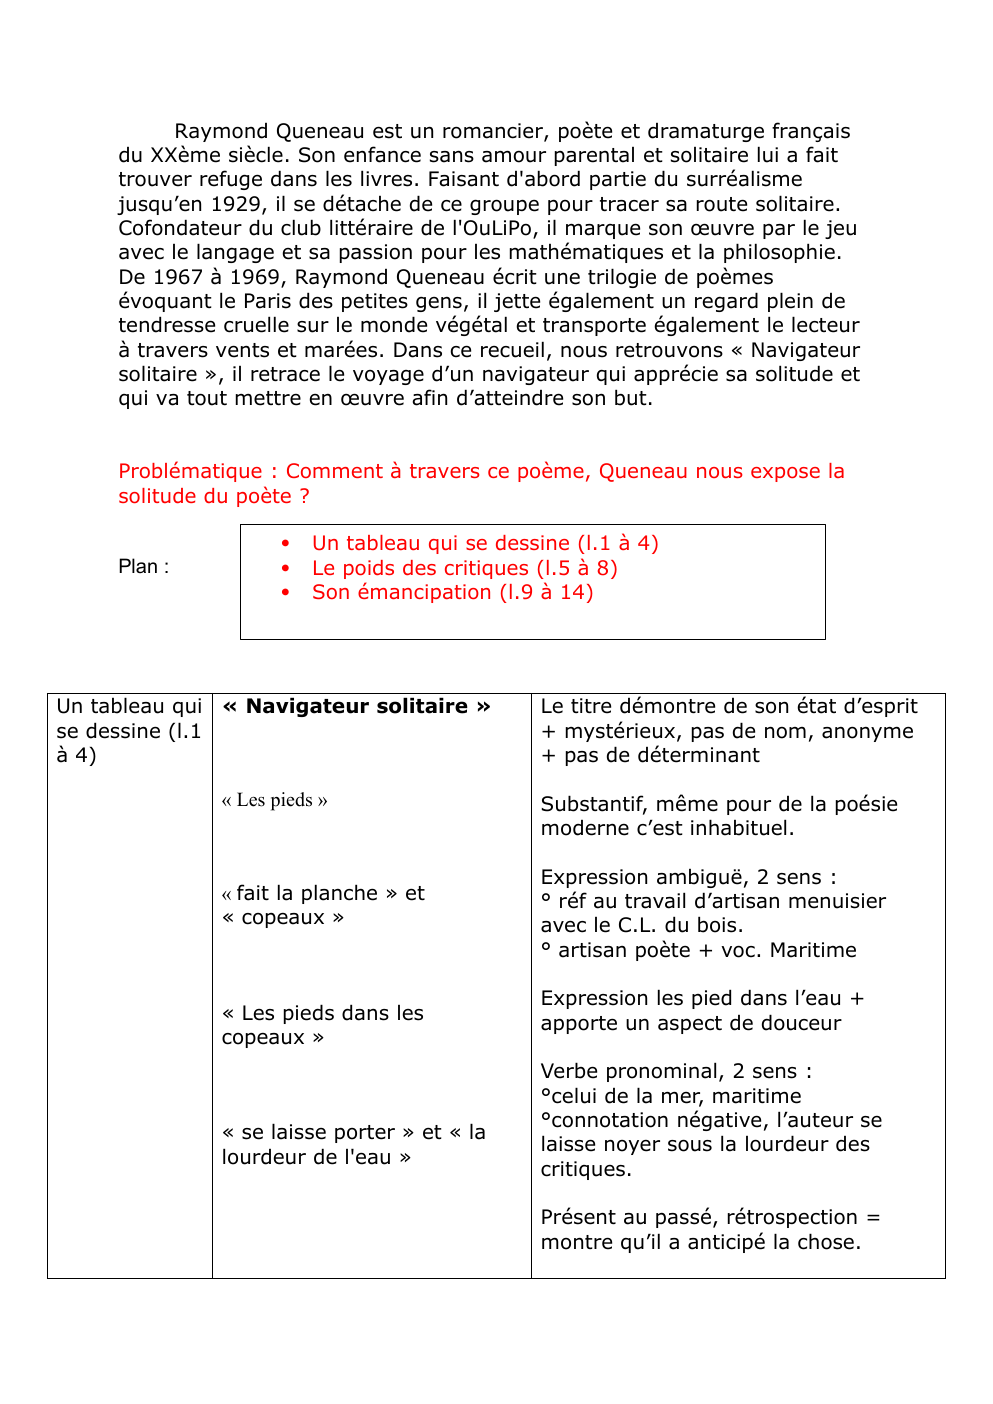 Prévisualisation du document analyse Raymond Queneau